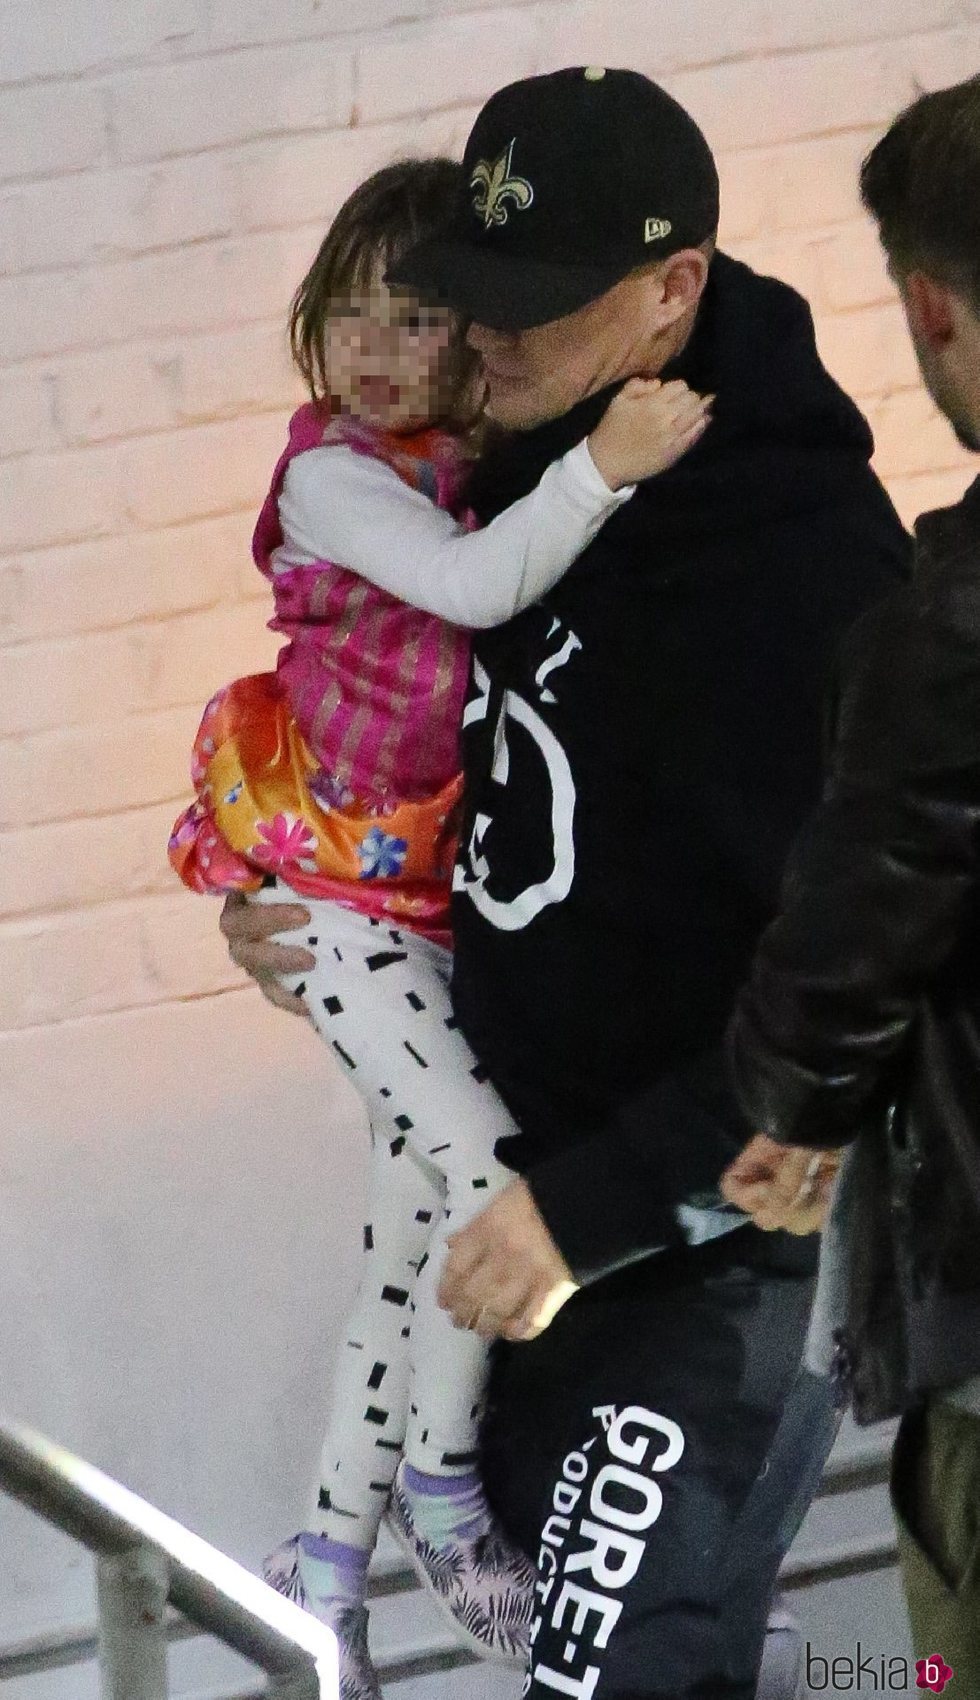 Channing Tatum y su hija a la salida de un concierto